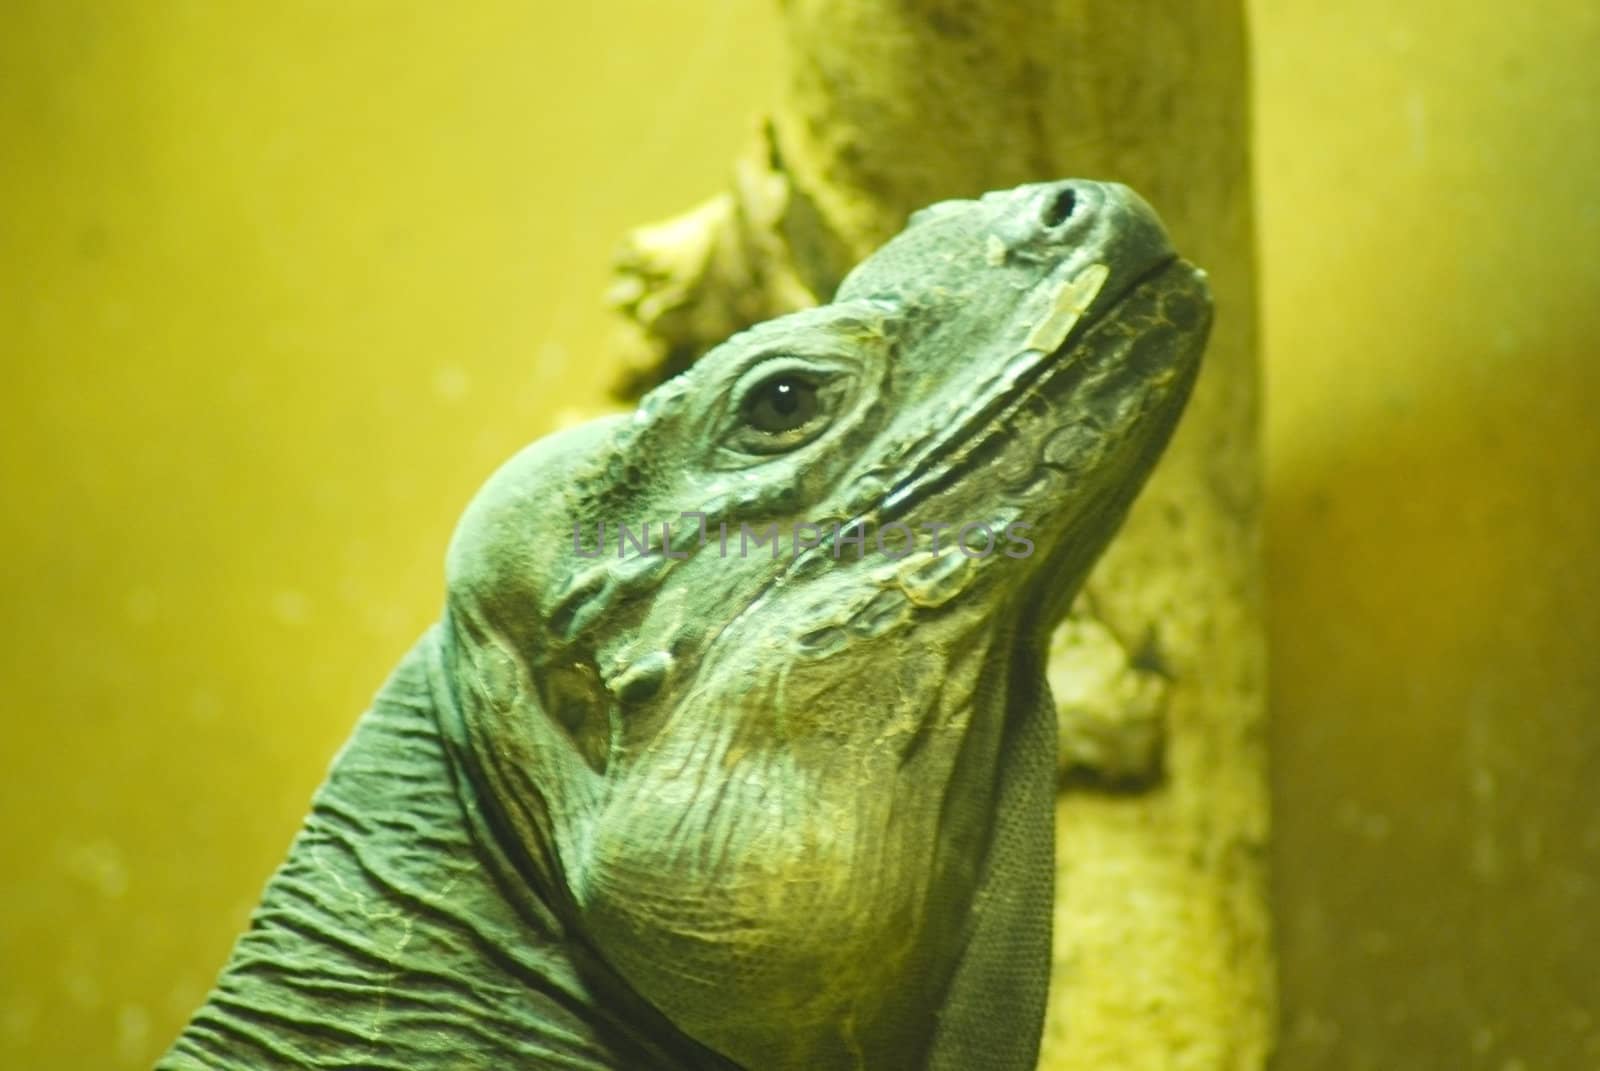 Green iguana face close up (Iguana iguana)   by svtrotof